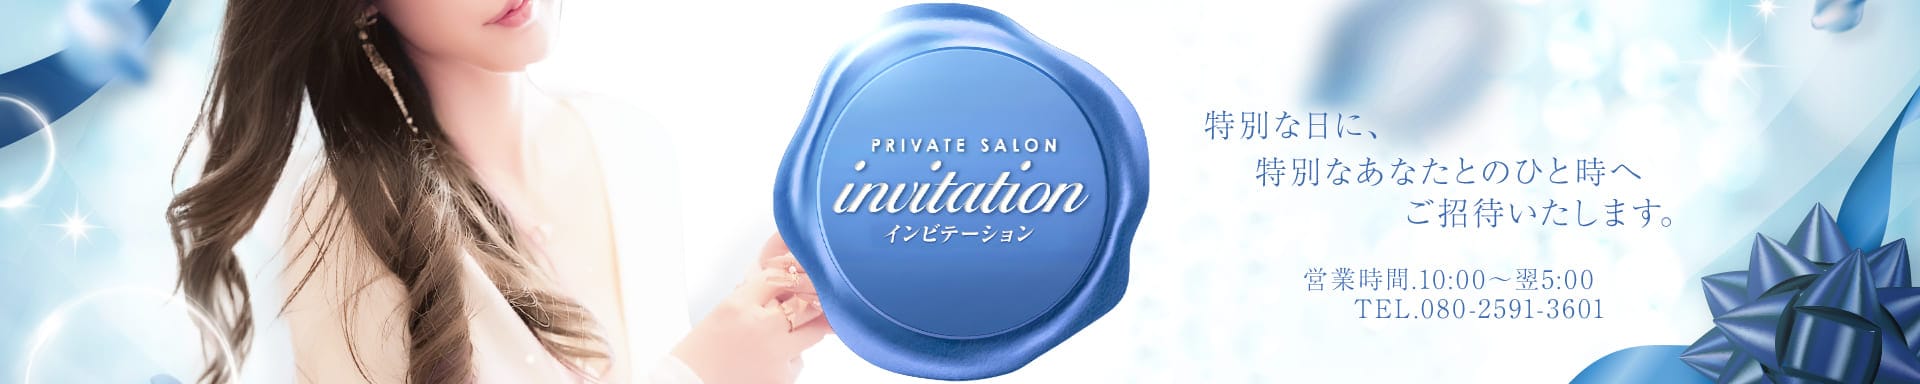 invitation -インビテーション-